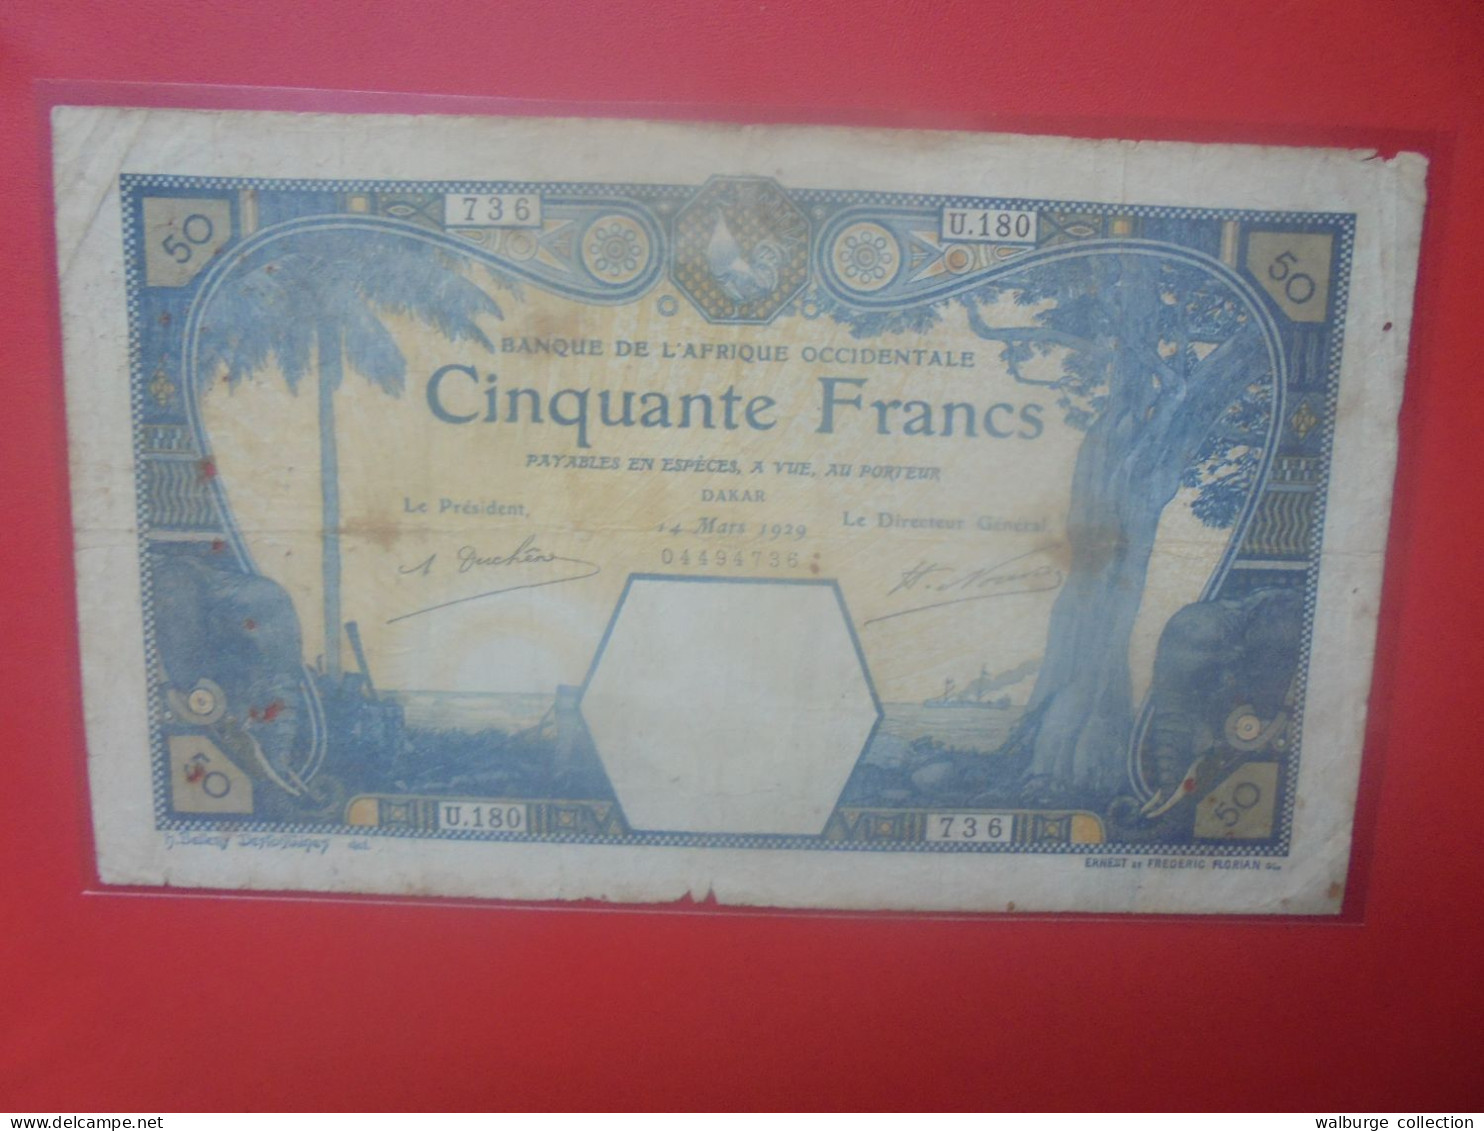 AFRIQUE OCCIDENTALE FRANCAISE (Sénégal) 50 FRANCS 1929 Circuler ASSEZ RARE ! (B.33) - West African States